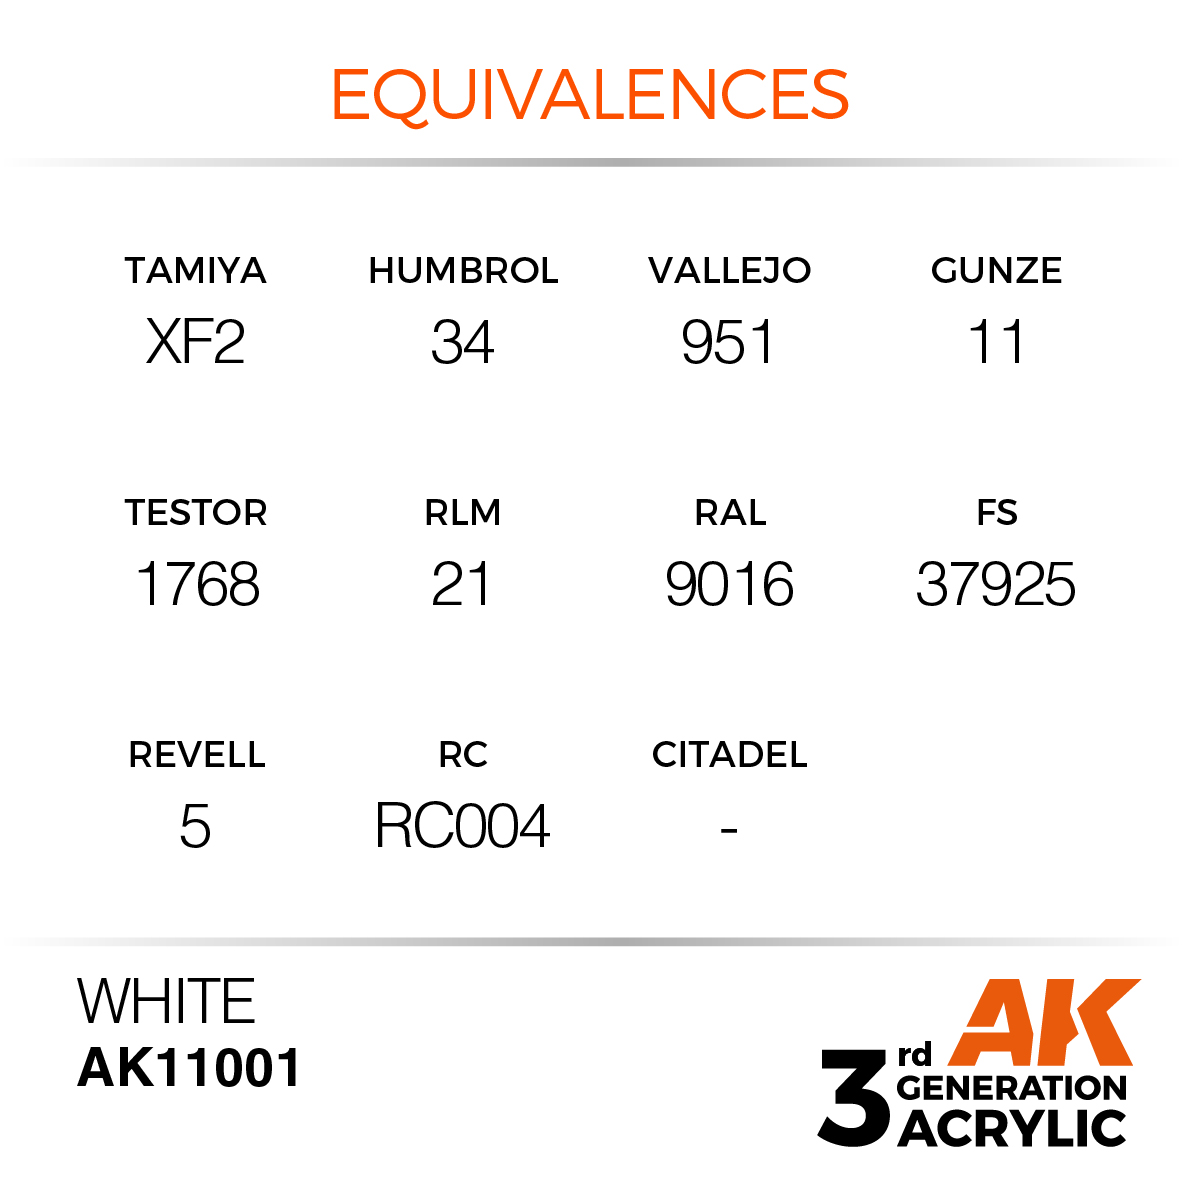 AK11001 White (3rd-Generation) (17mL)